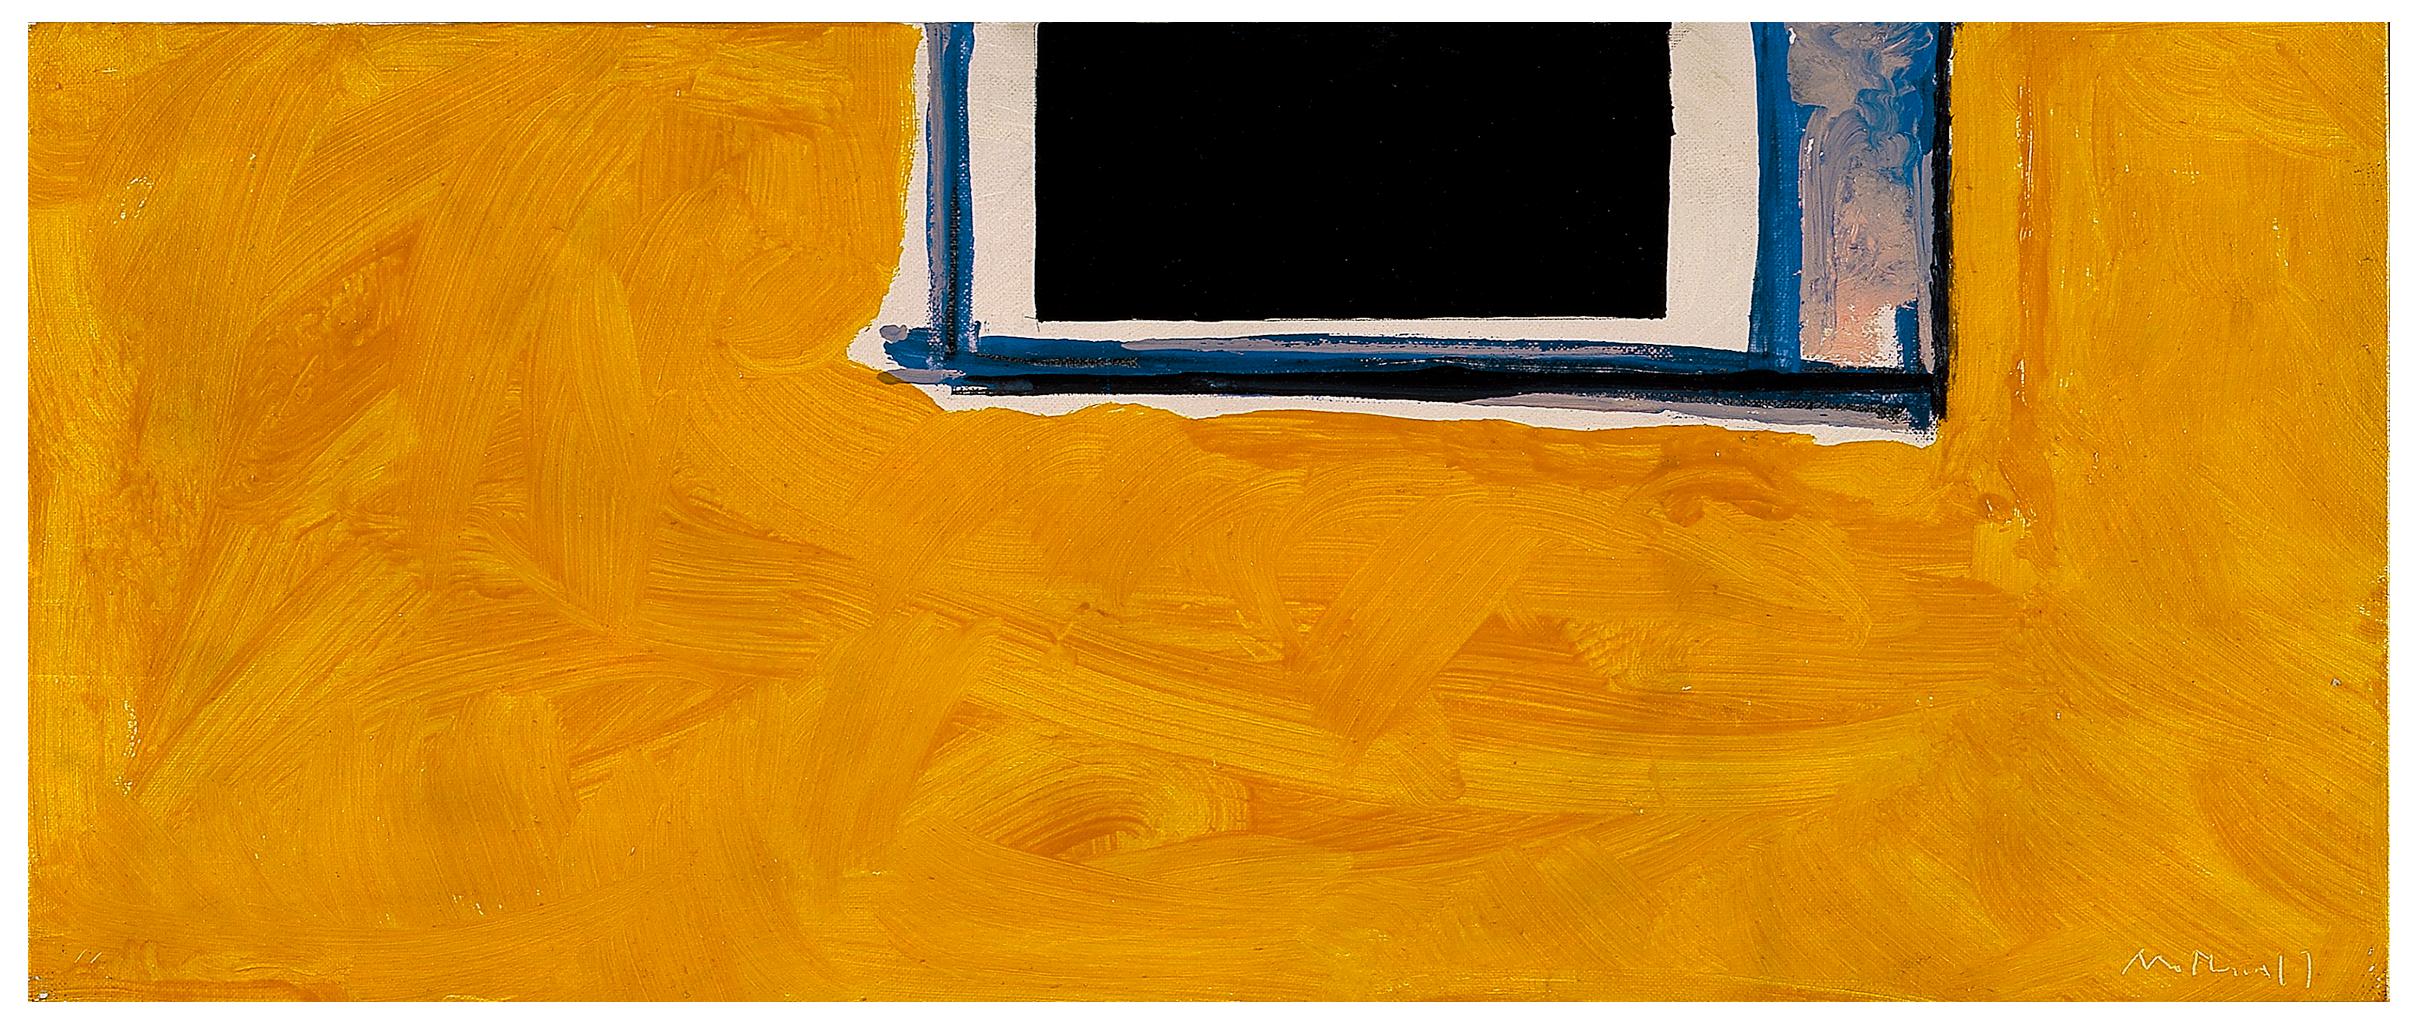 Abstract Painting Robert Motherwell - Sans titre (ouvert en jaune, noir et bleu)